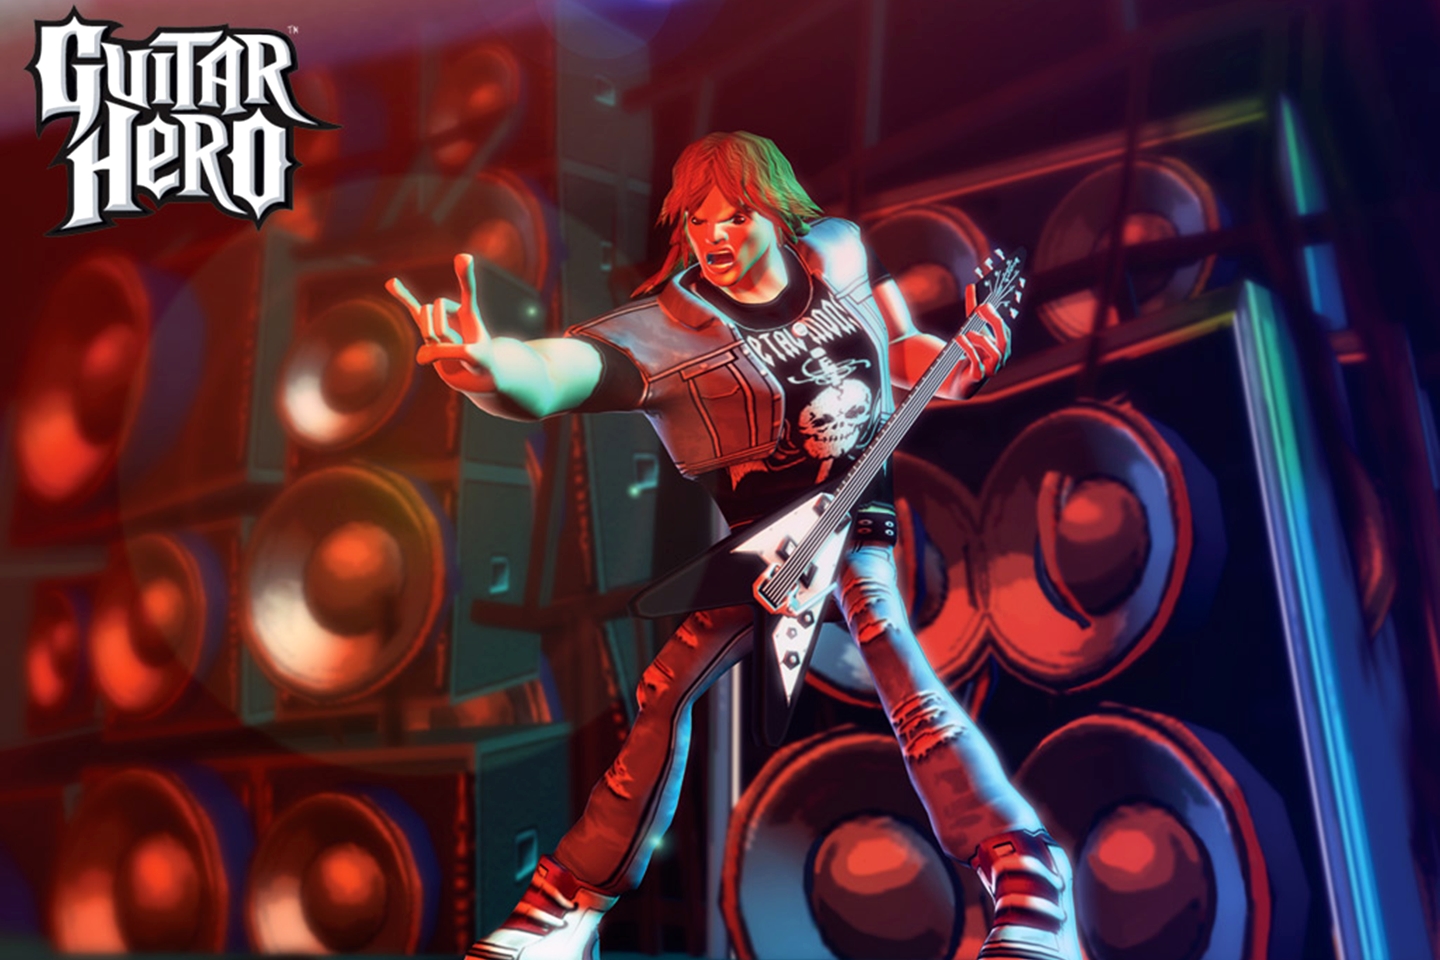 Bandas confirmadas no Rock in Rio já apareceram no Guitar Hero! Veja lista